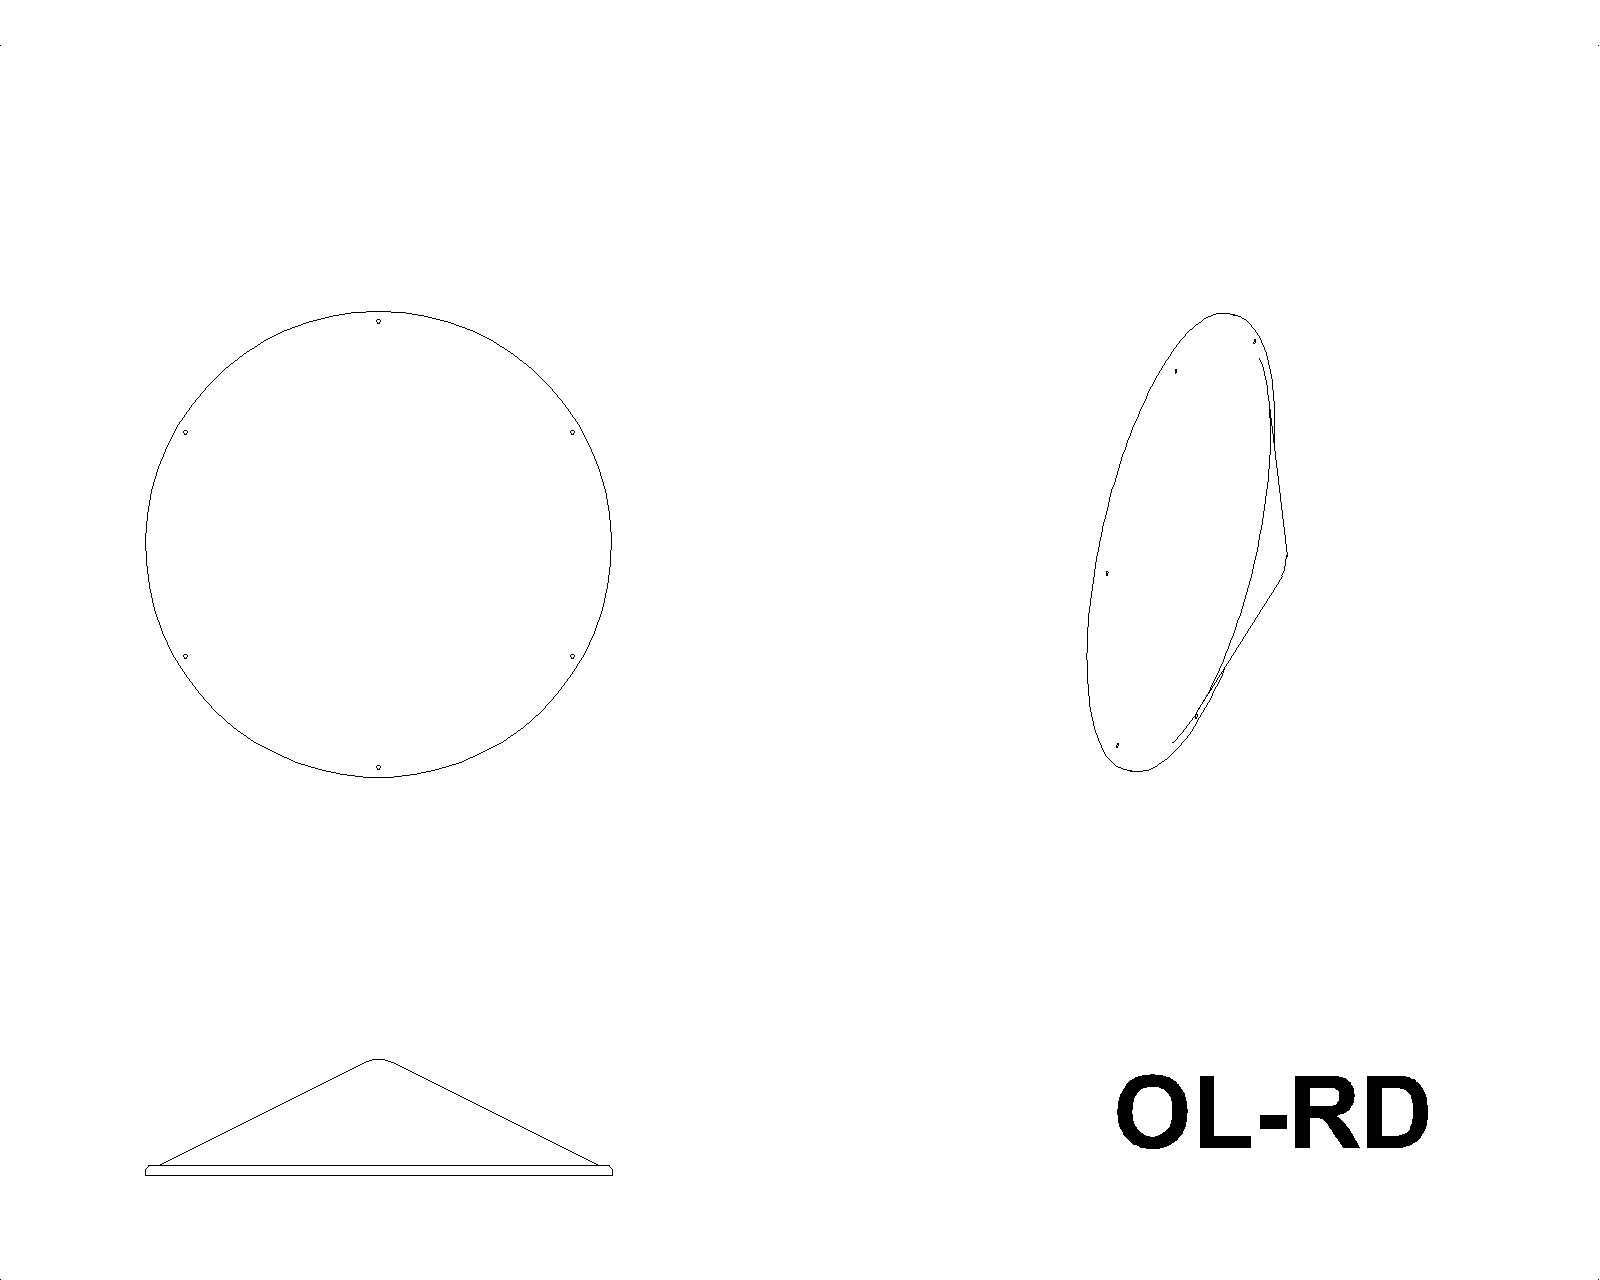 OL-RD